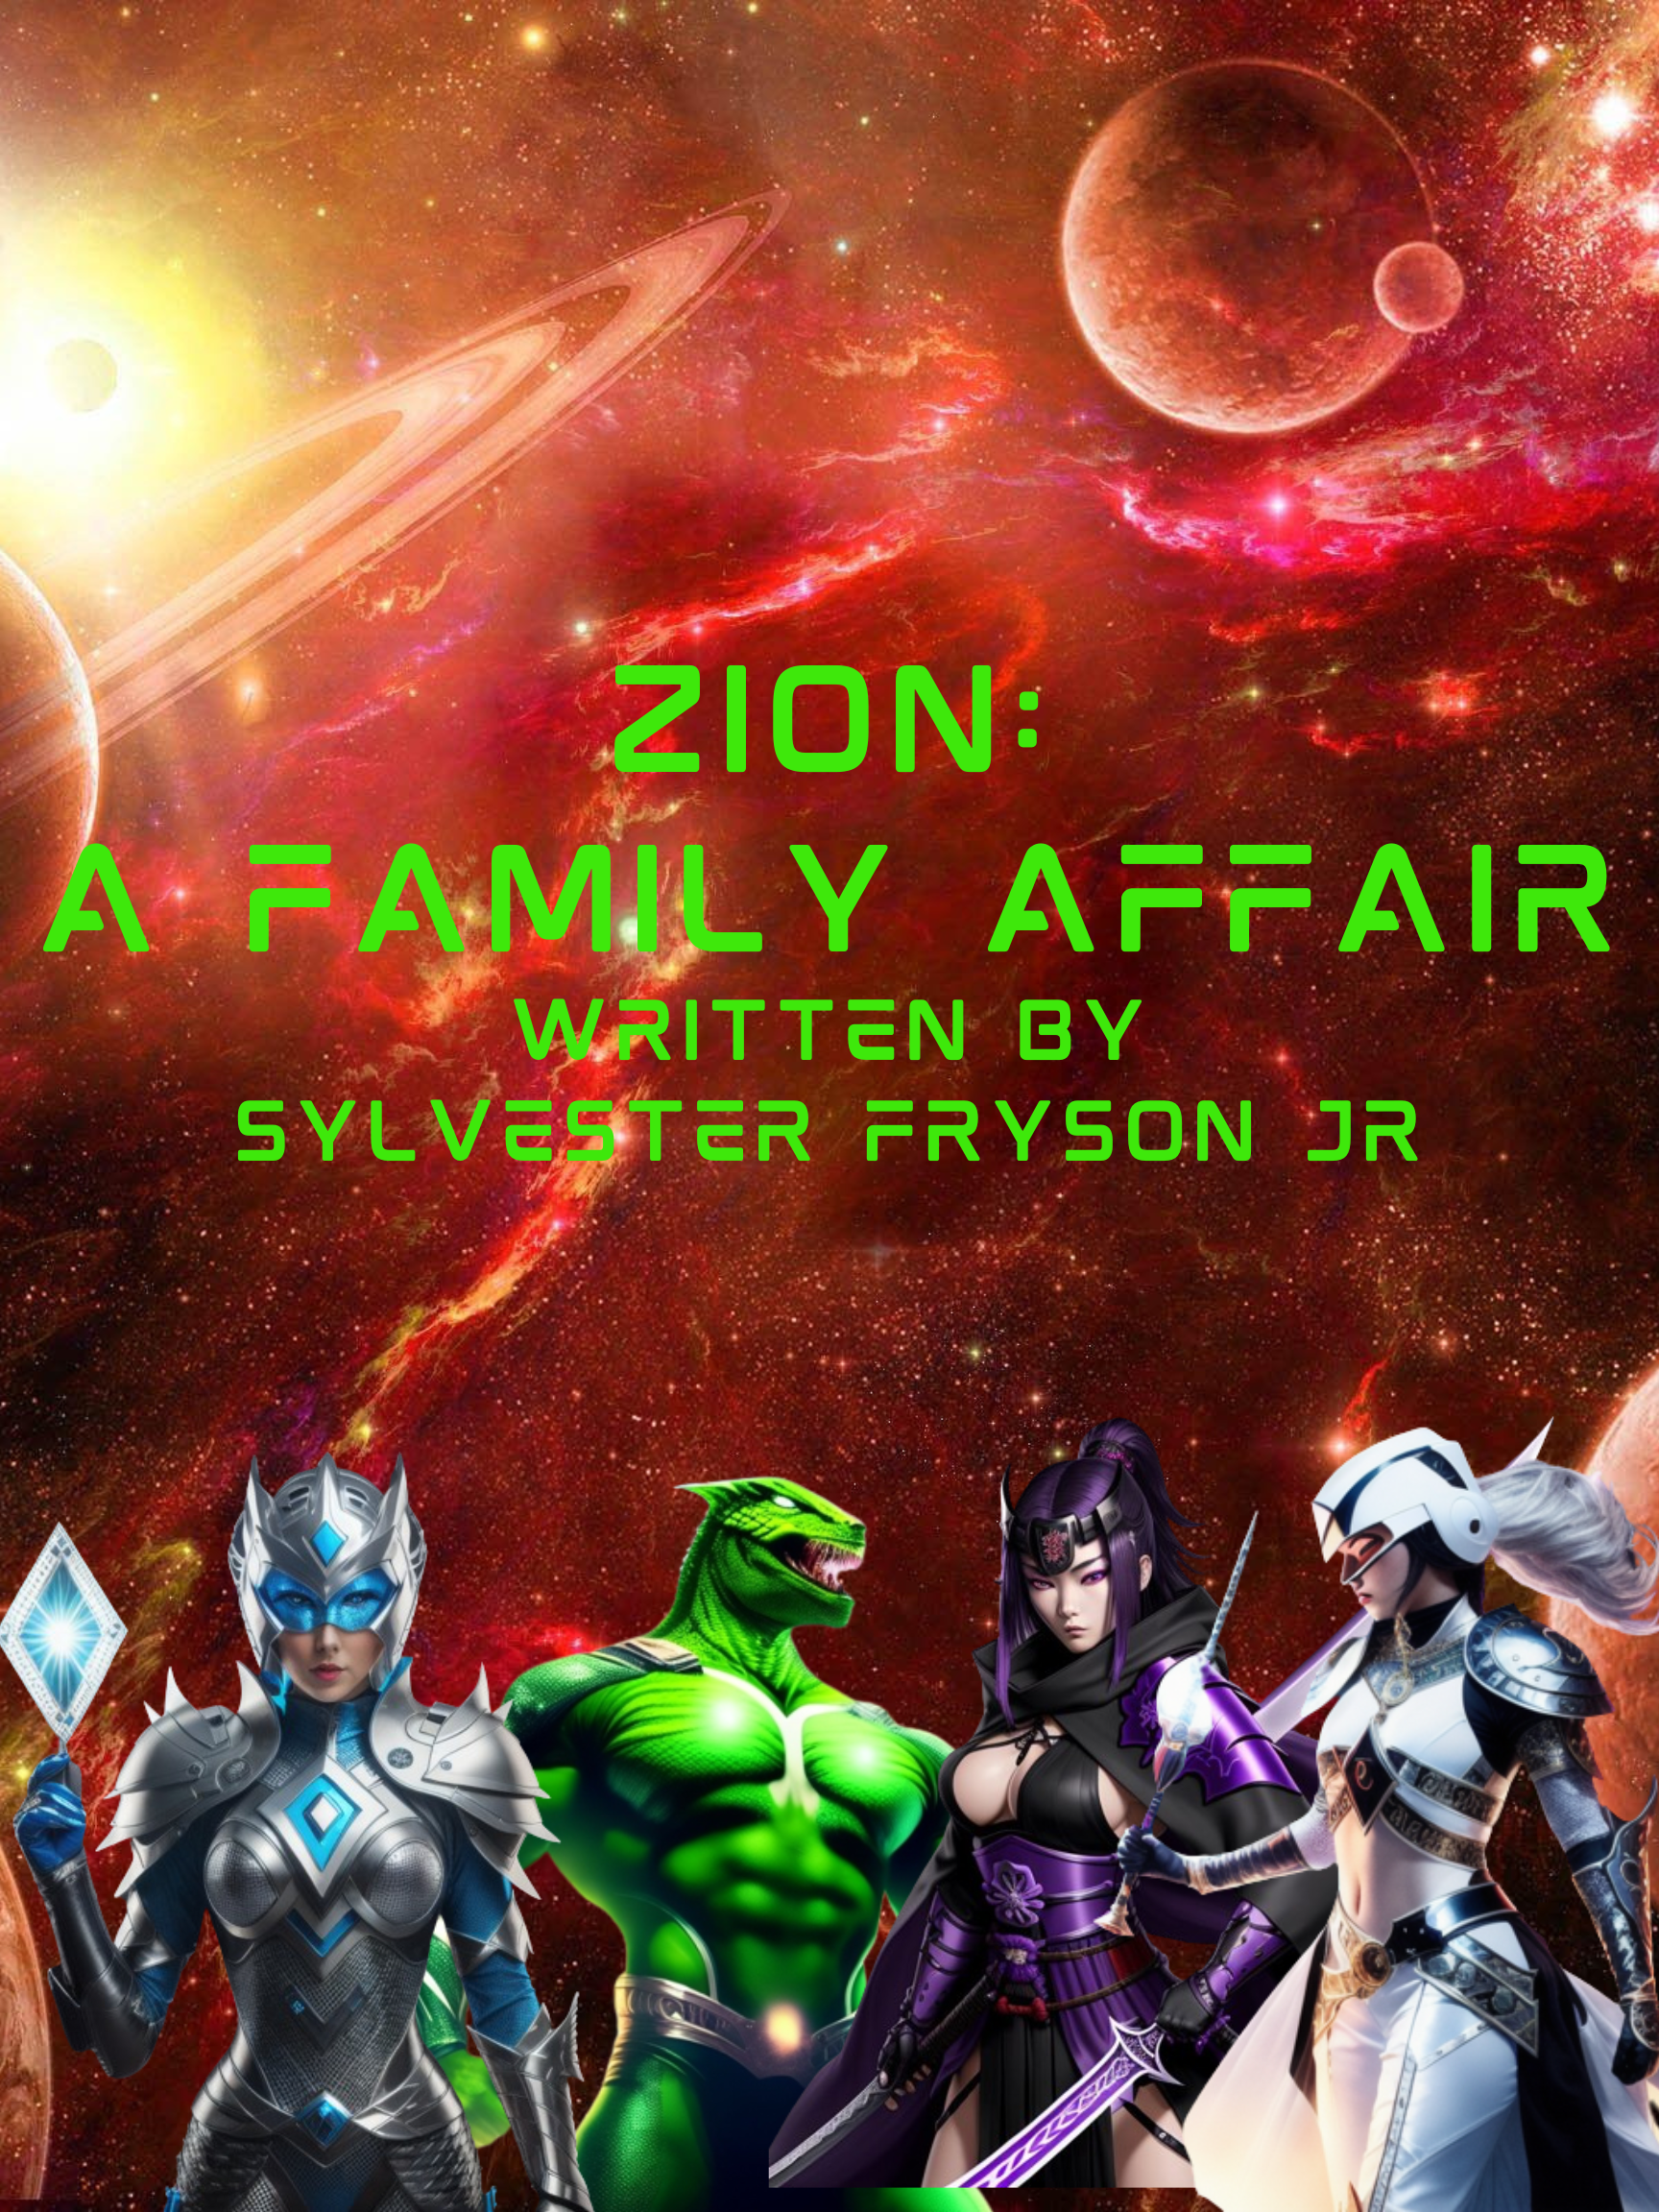 ZION: A FAMILY AFFAIR